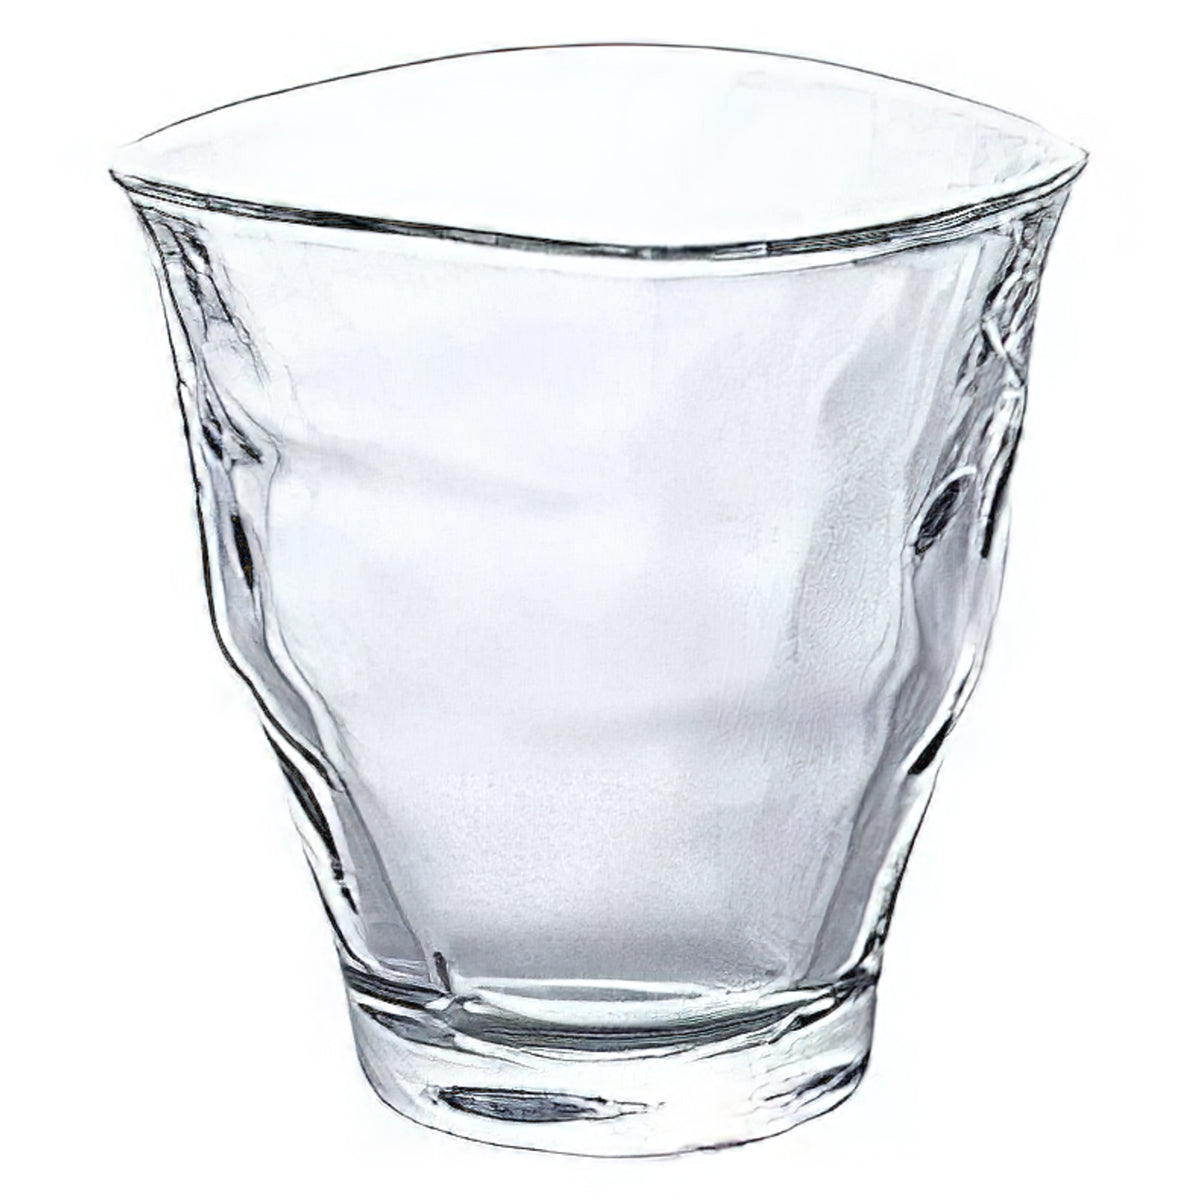 ADERIA Yurara Soda-Lime Glass Cup 3 Pieces